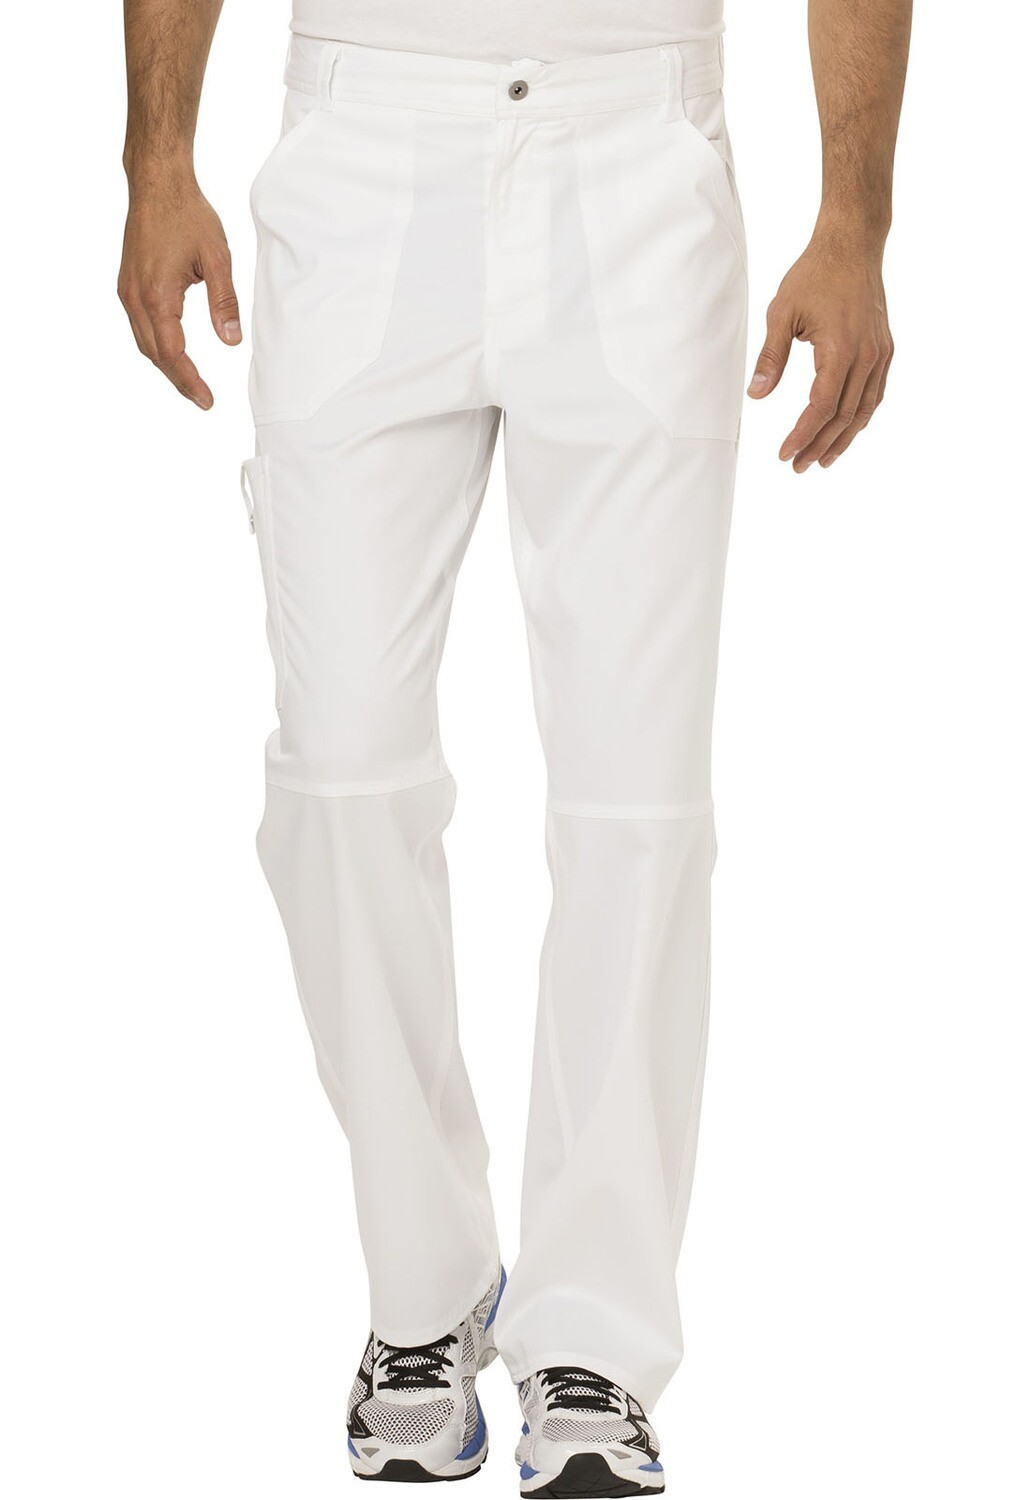 Pantalone Sanitario Medico CHEROKEE WW140 White